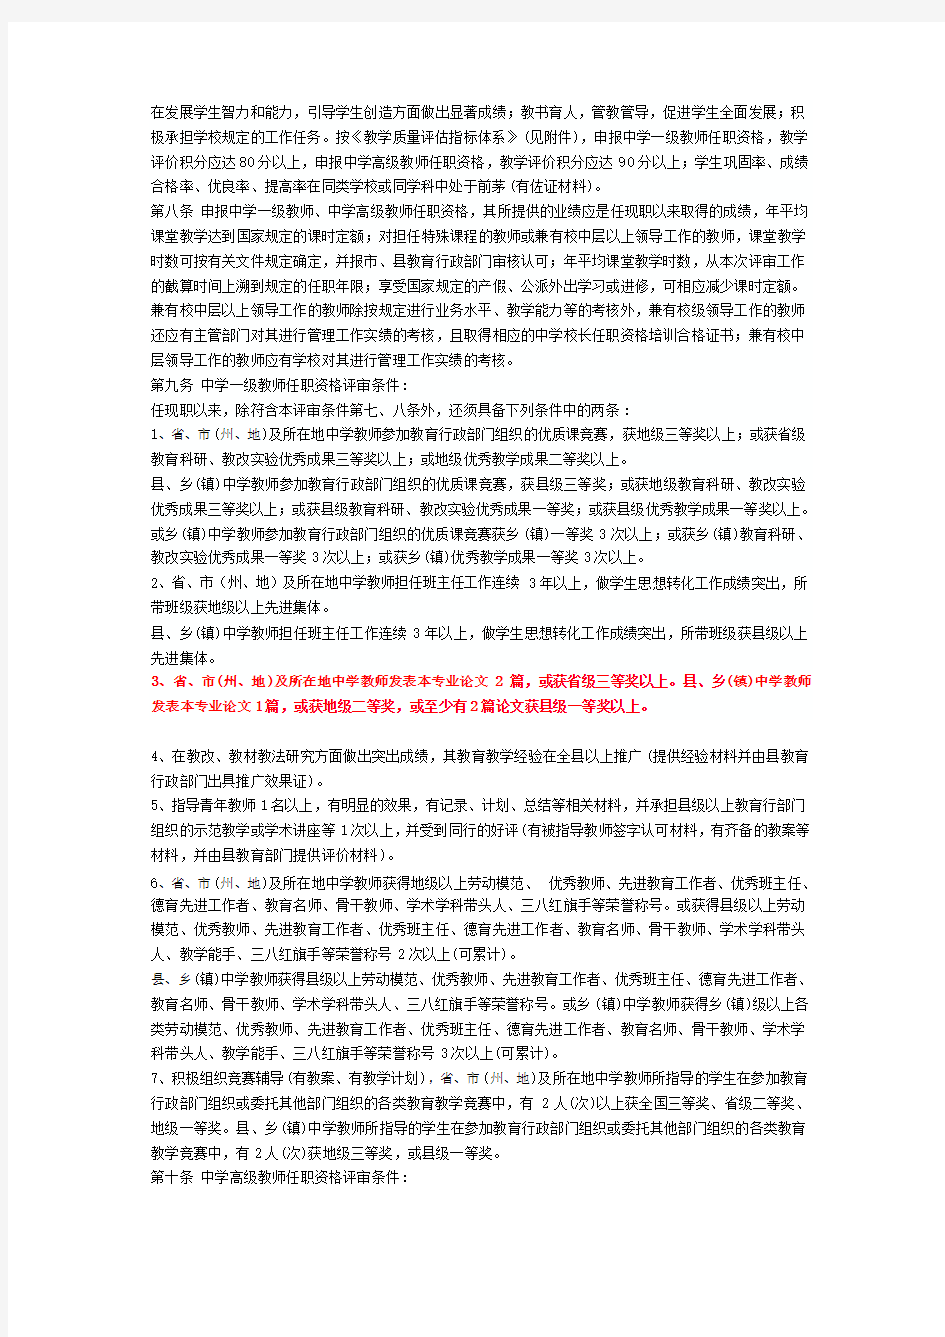 2013年贵州省中小学教师职称评审条件